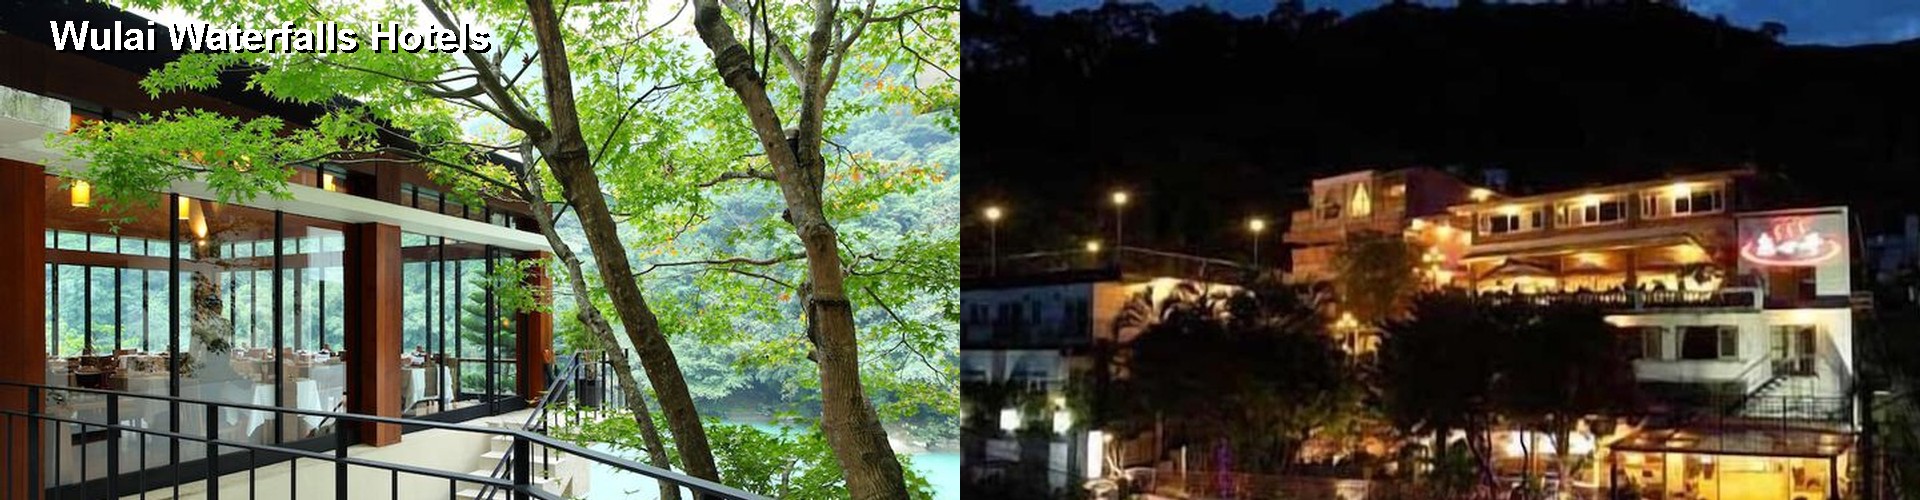 5 Best Hotels near Wulai Waterfalls